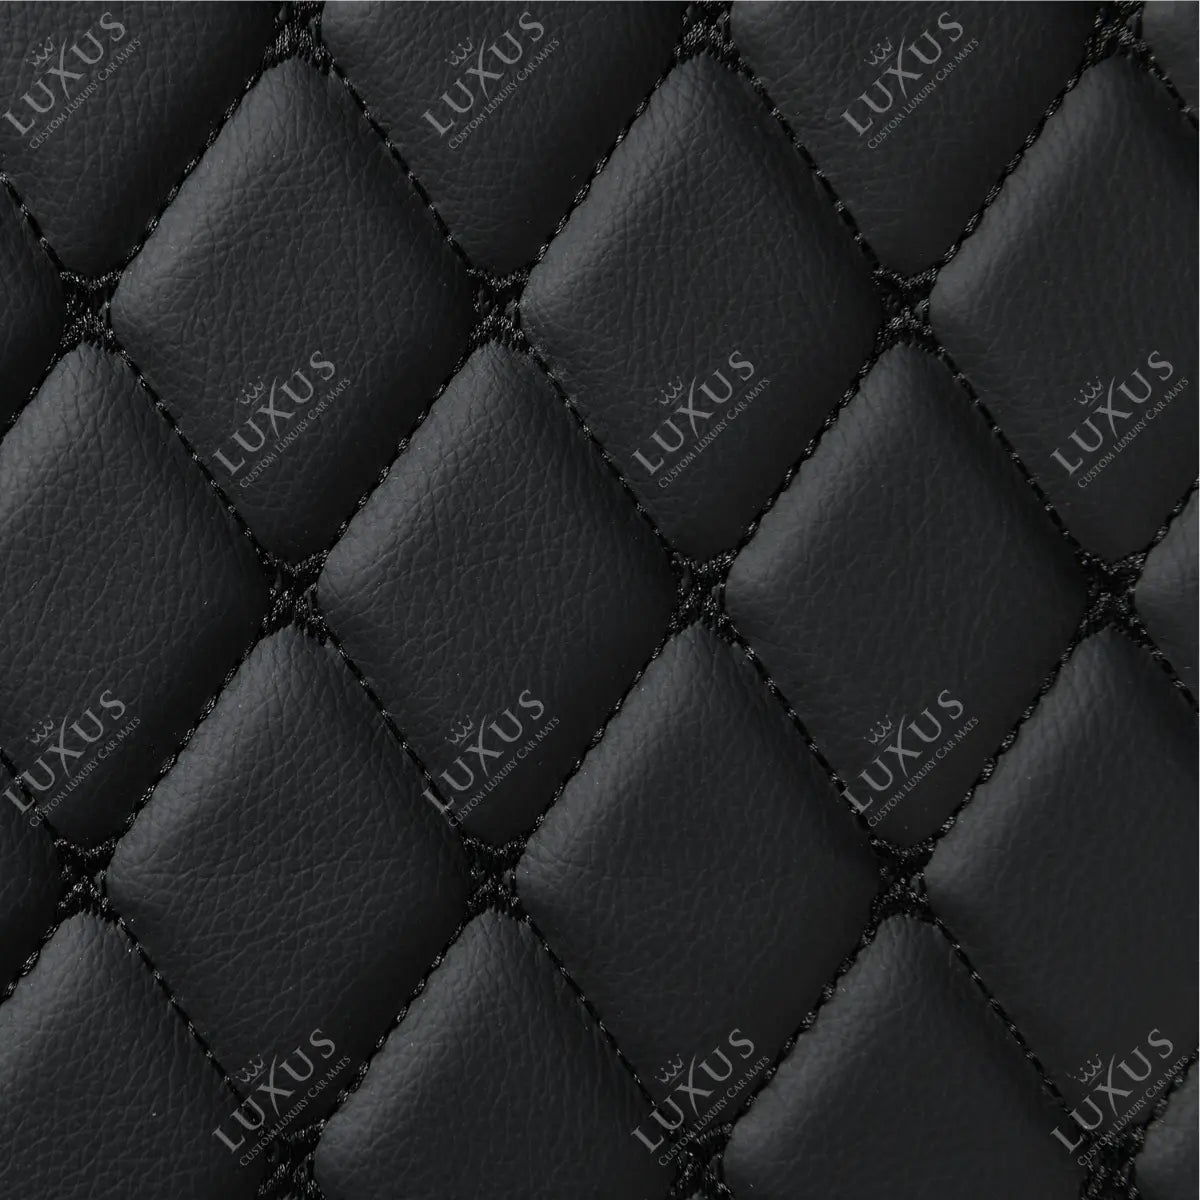 Luxus Car Mats™ - Zwarte en zwarte stiksels 3D luxe lederen koffer-/koffermat